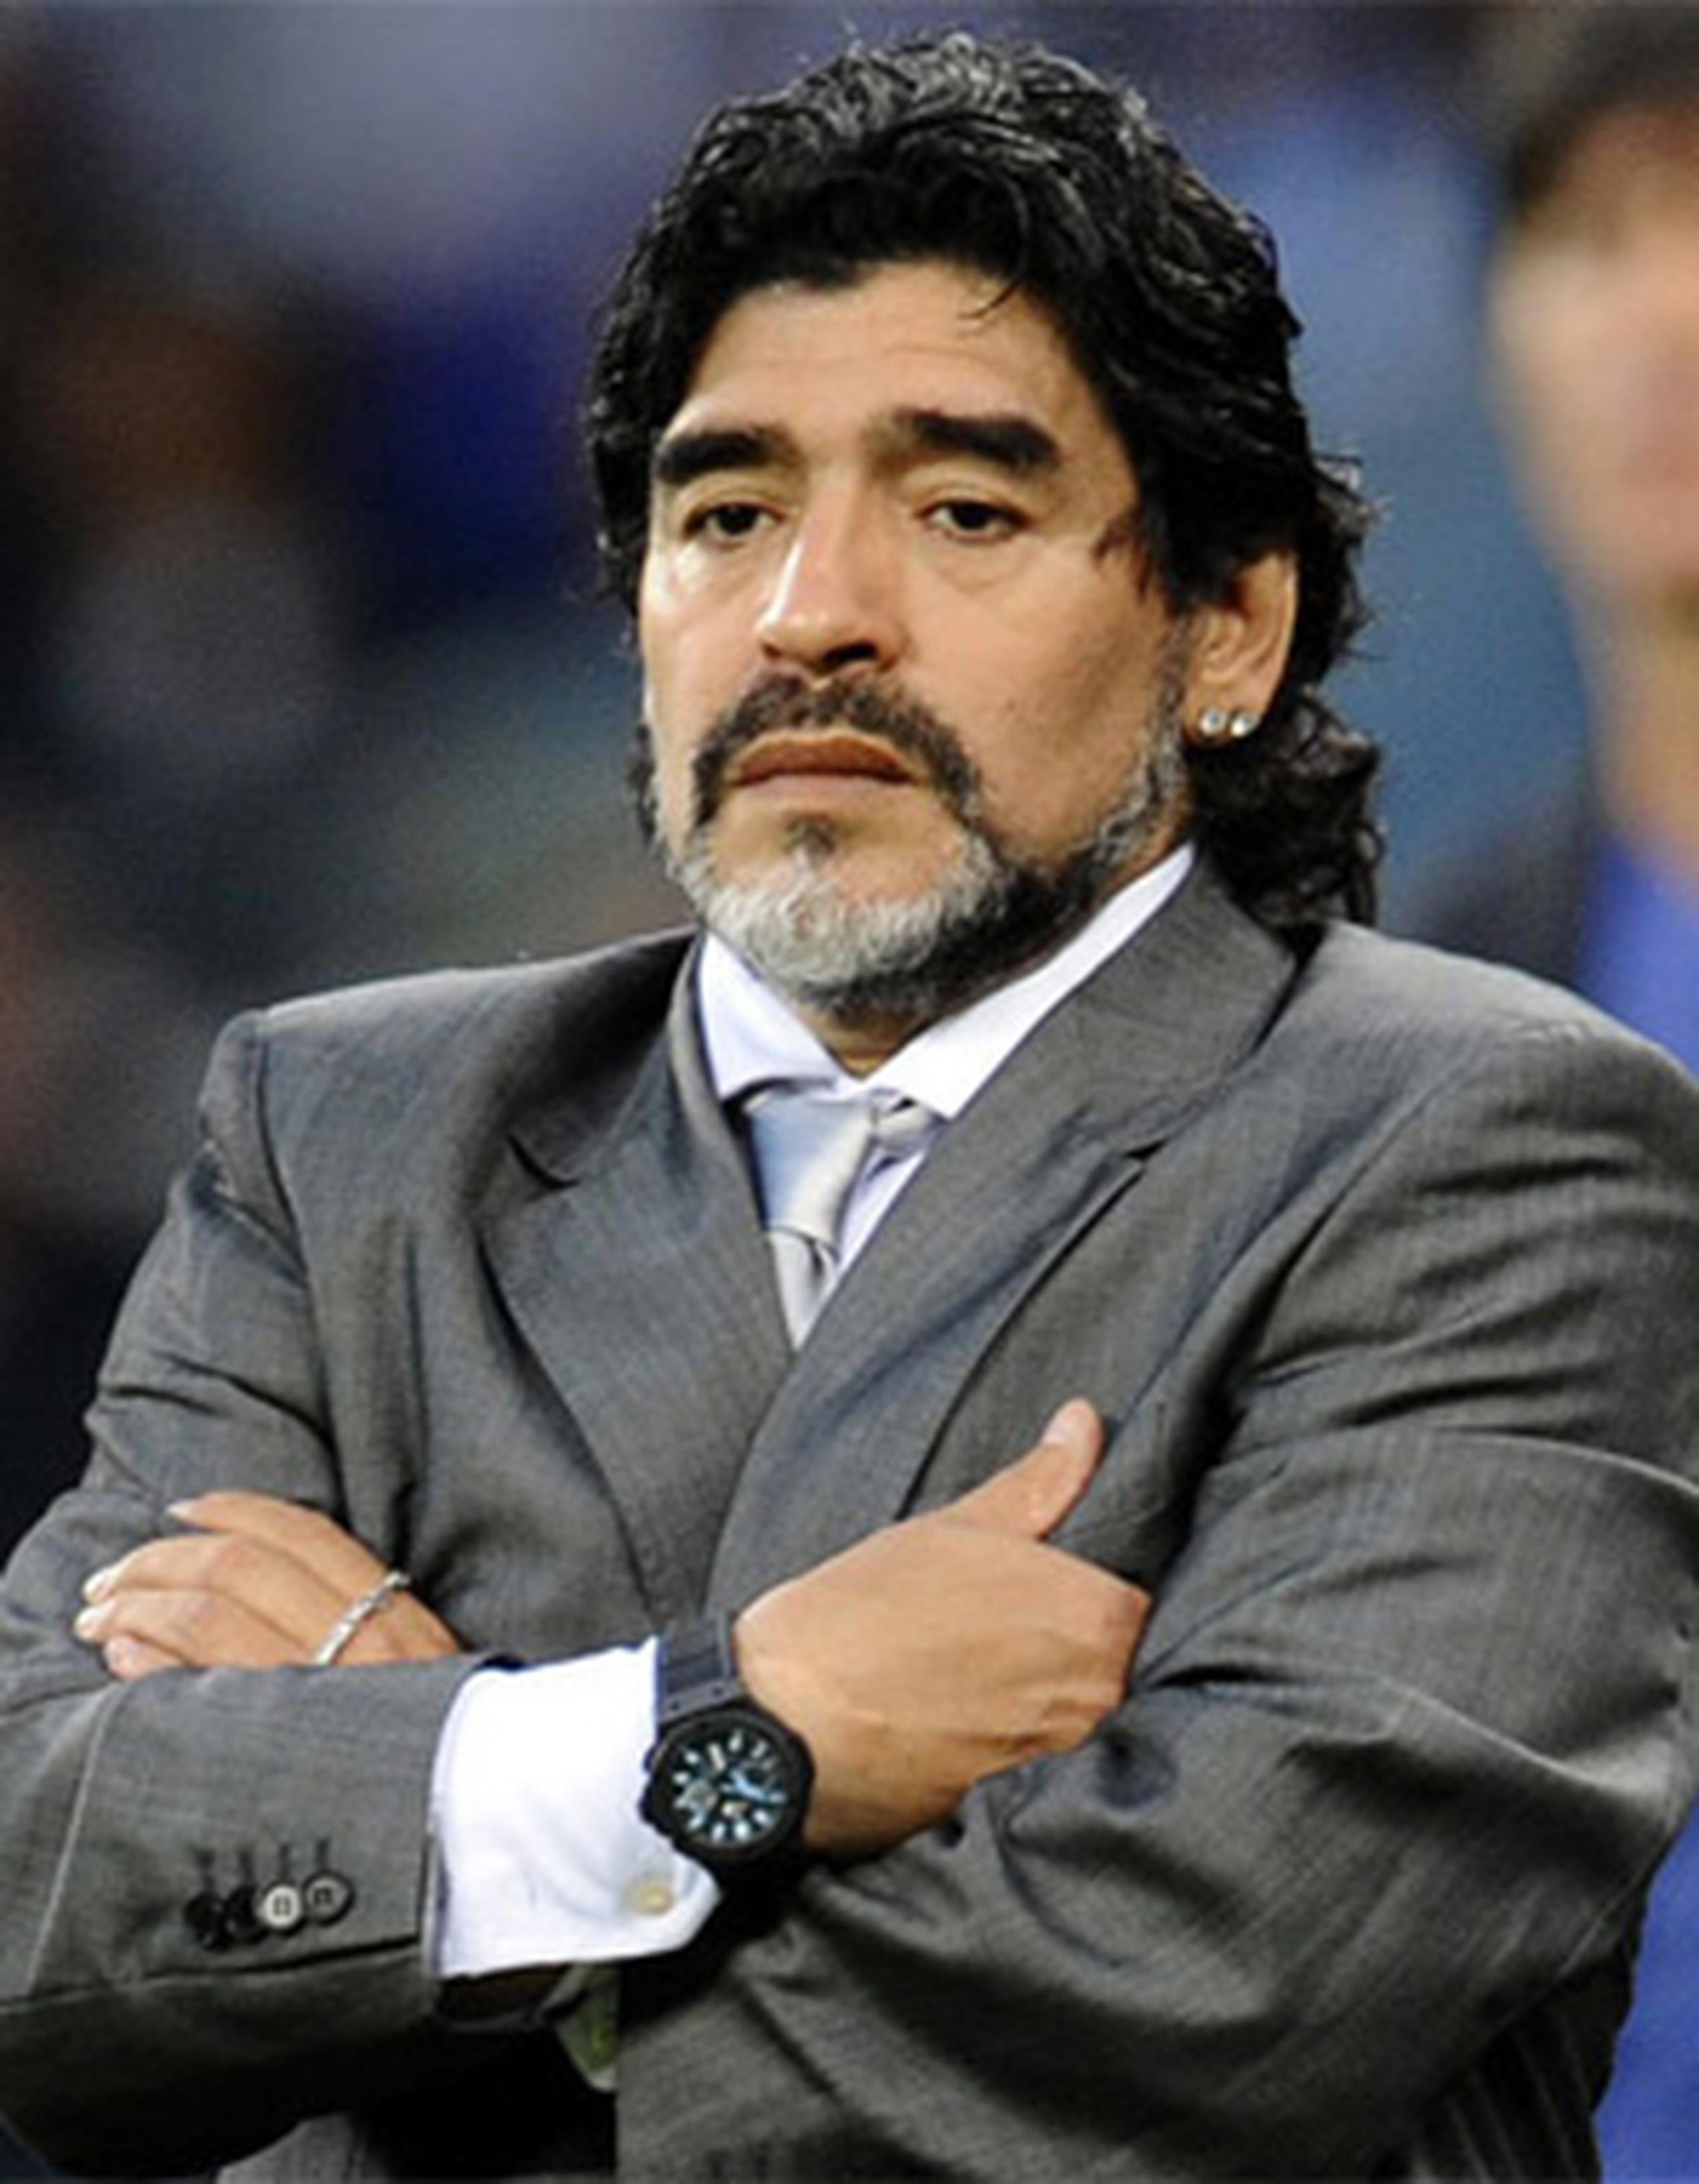 Maradona, uno de los mayores críticos del organismo rector del fútbol mundial, ha tachado durante años a Blatter de "corrupto" y comparado a la FIFA con una organización mafiosa. (Archivo)